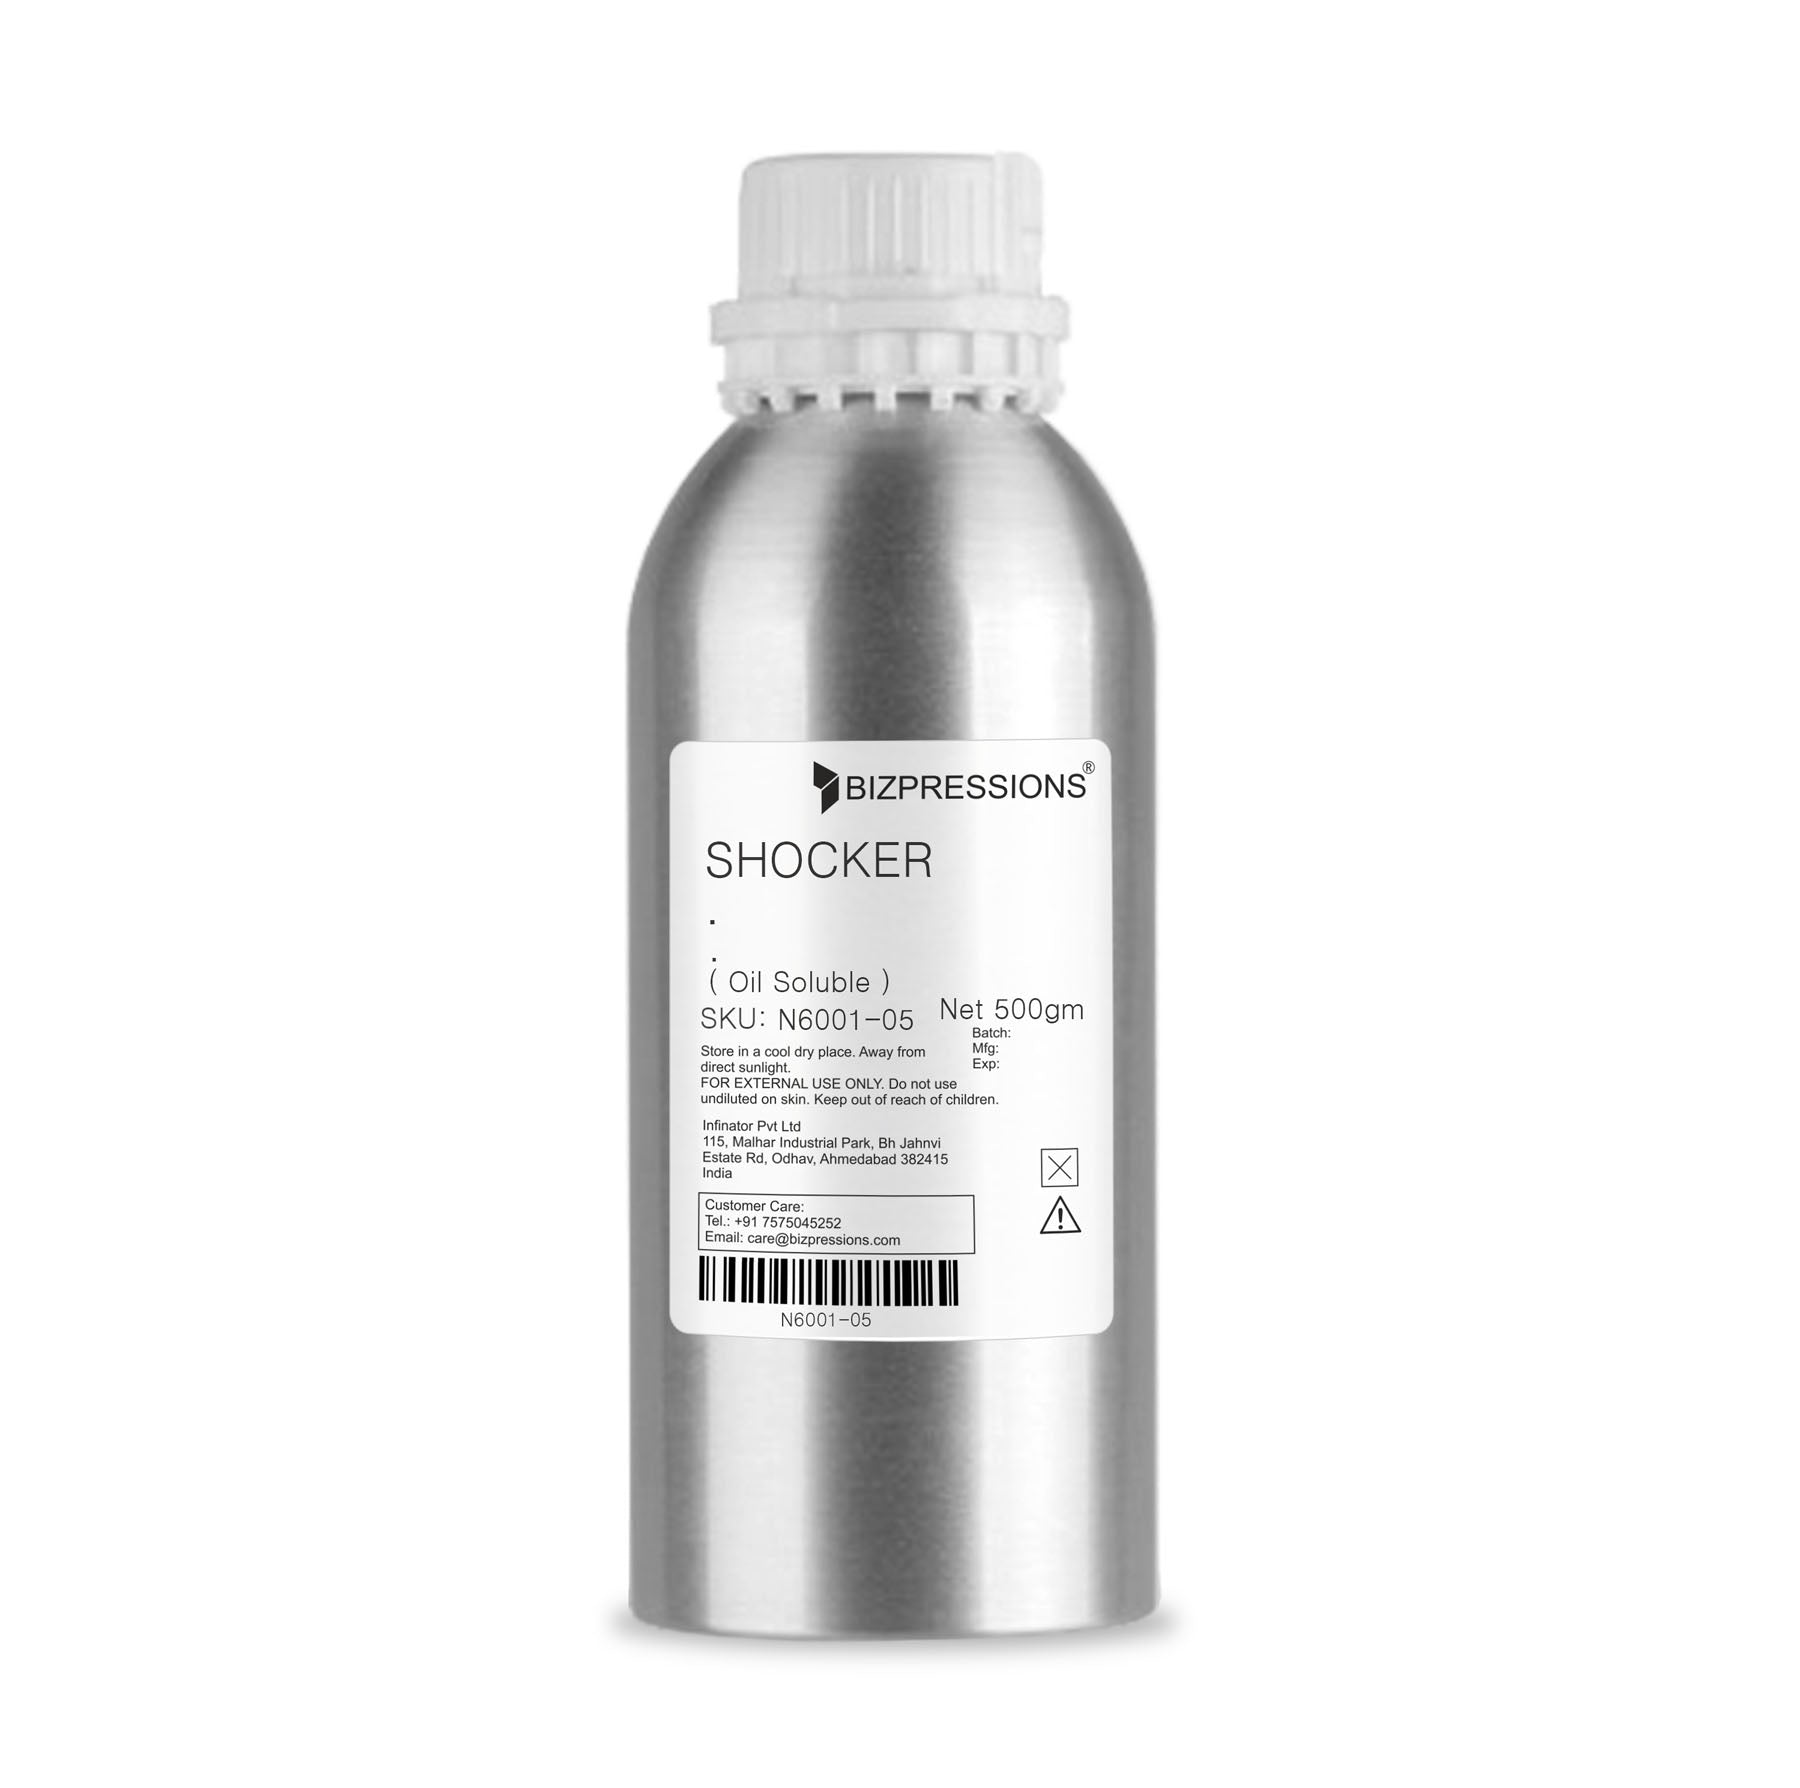 SHOCKER - Fragrance ( Oil Soluble ) - 500 gm